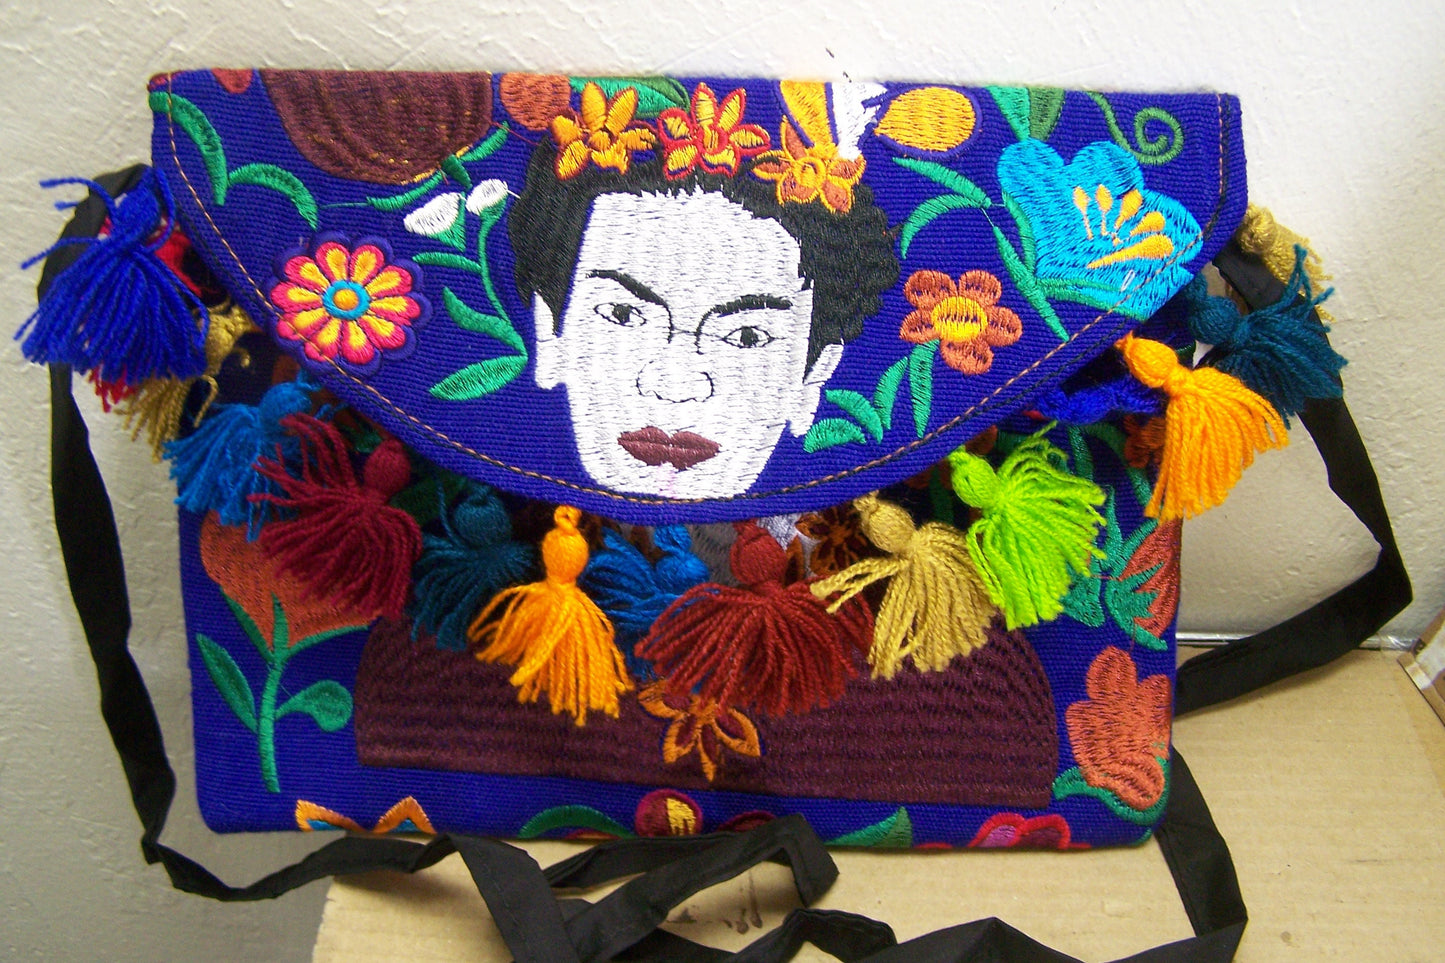 FRIDA! Beautifully Stitched Colorful Frida Kahlo Purse with Tassles #1 - Guatemala